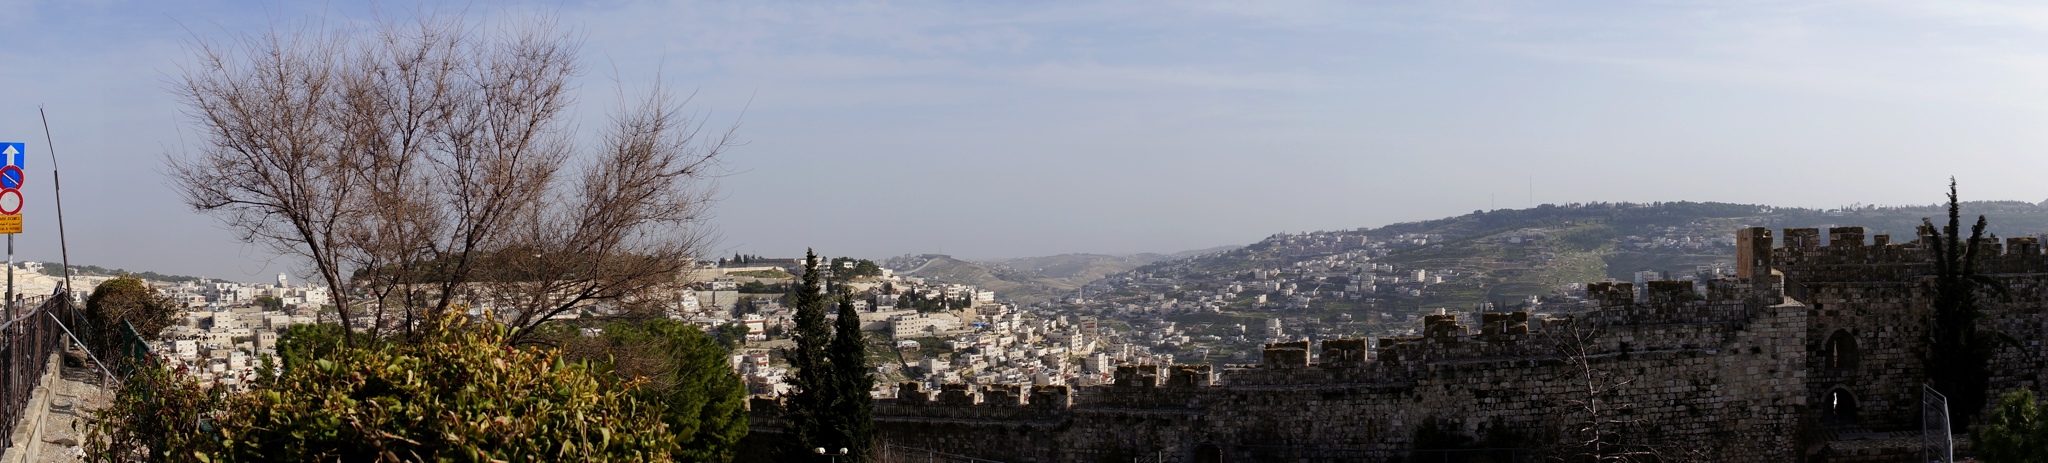 Jerusalem Anorama